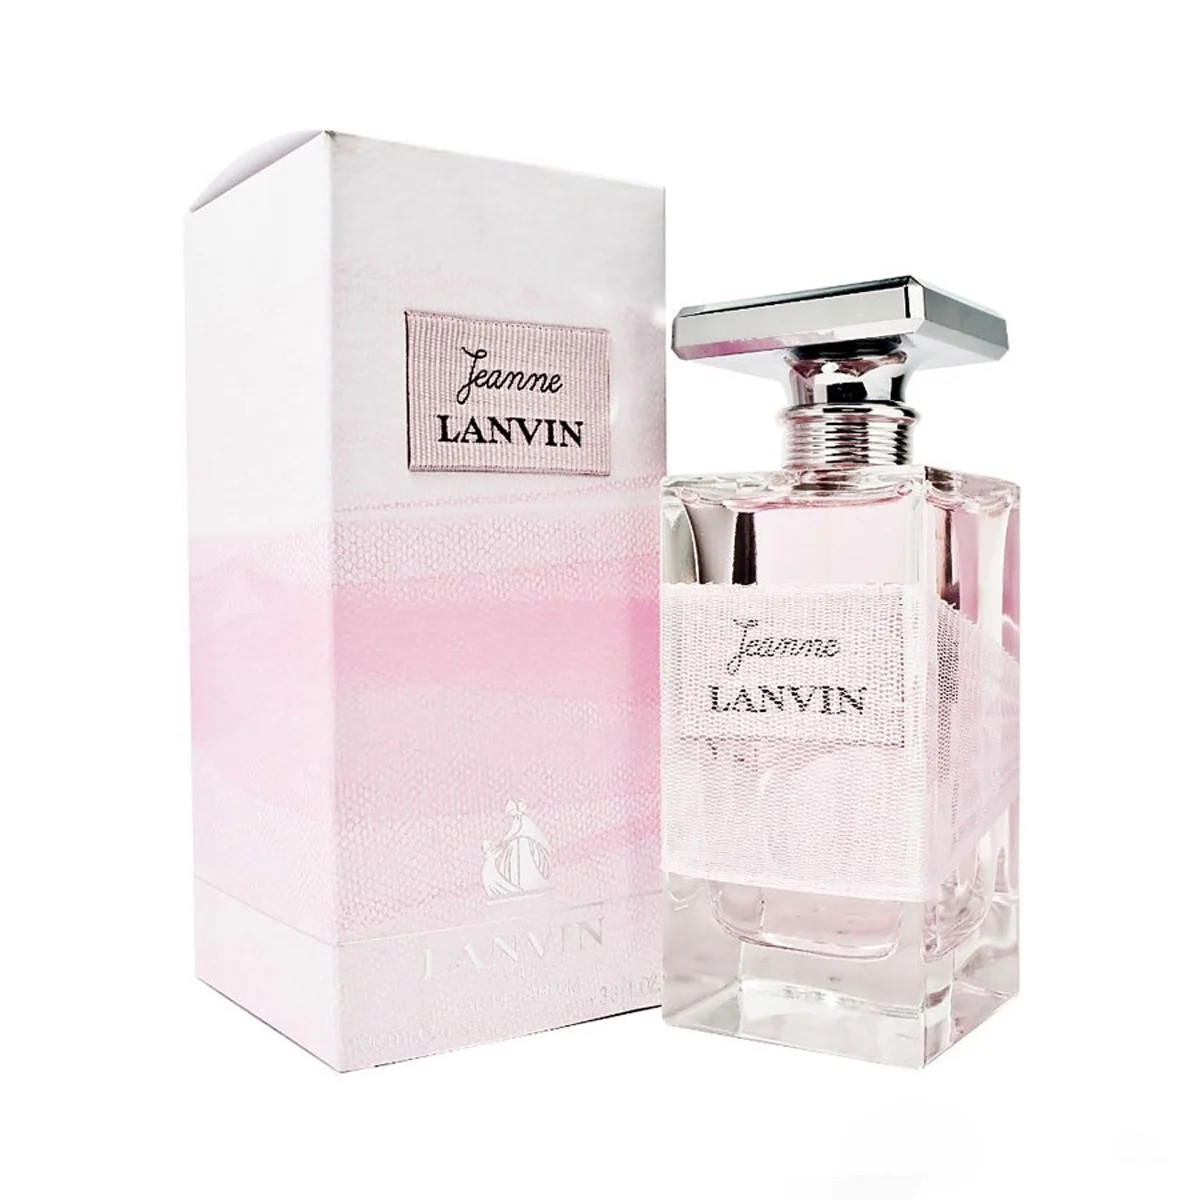 Nước hoa Jeanne Lanvin 100ml - Lanvin EDP Nữ Tính, Yêu Đời